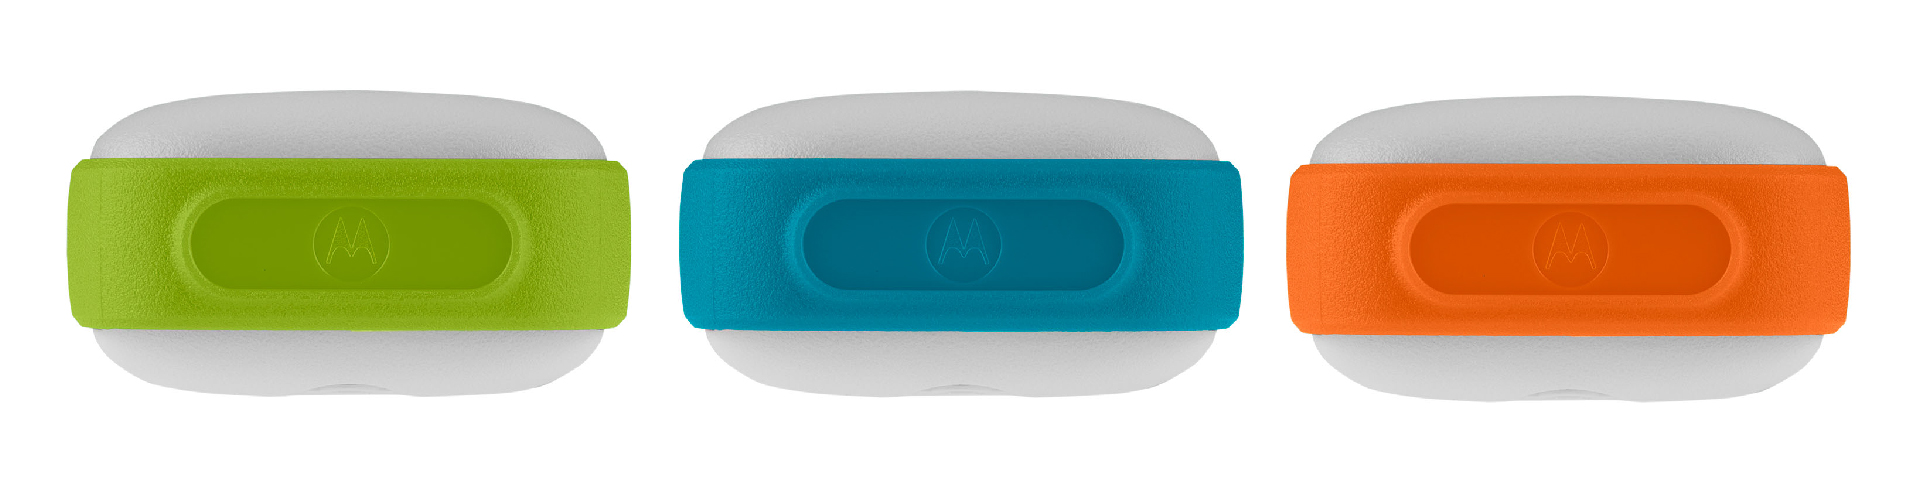 Motorola walkie talkie 3 colores